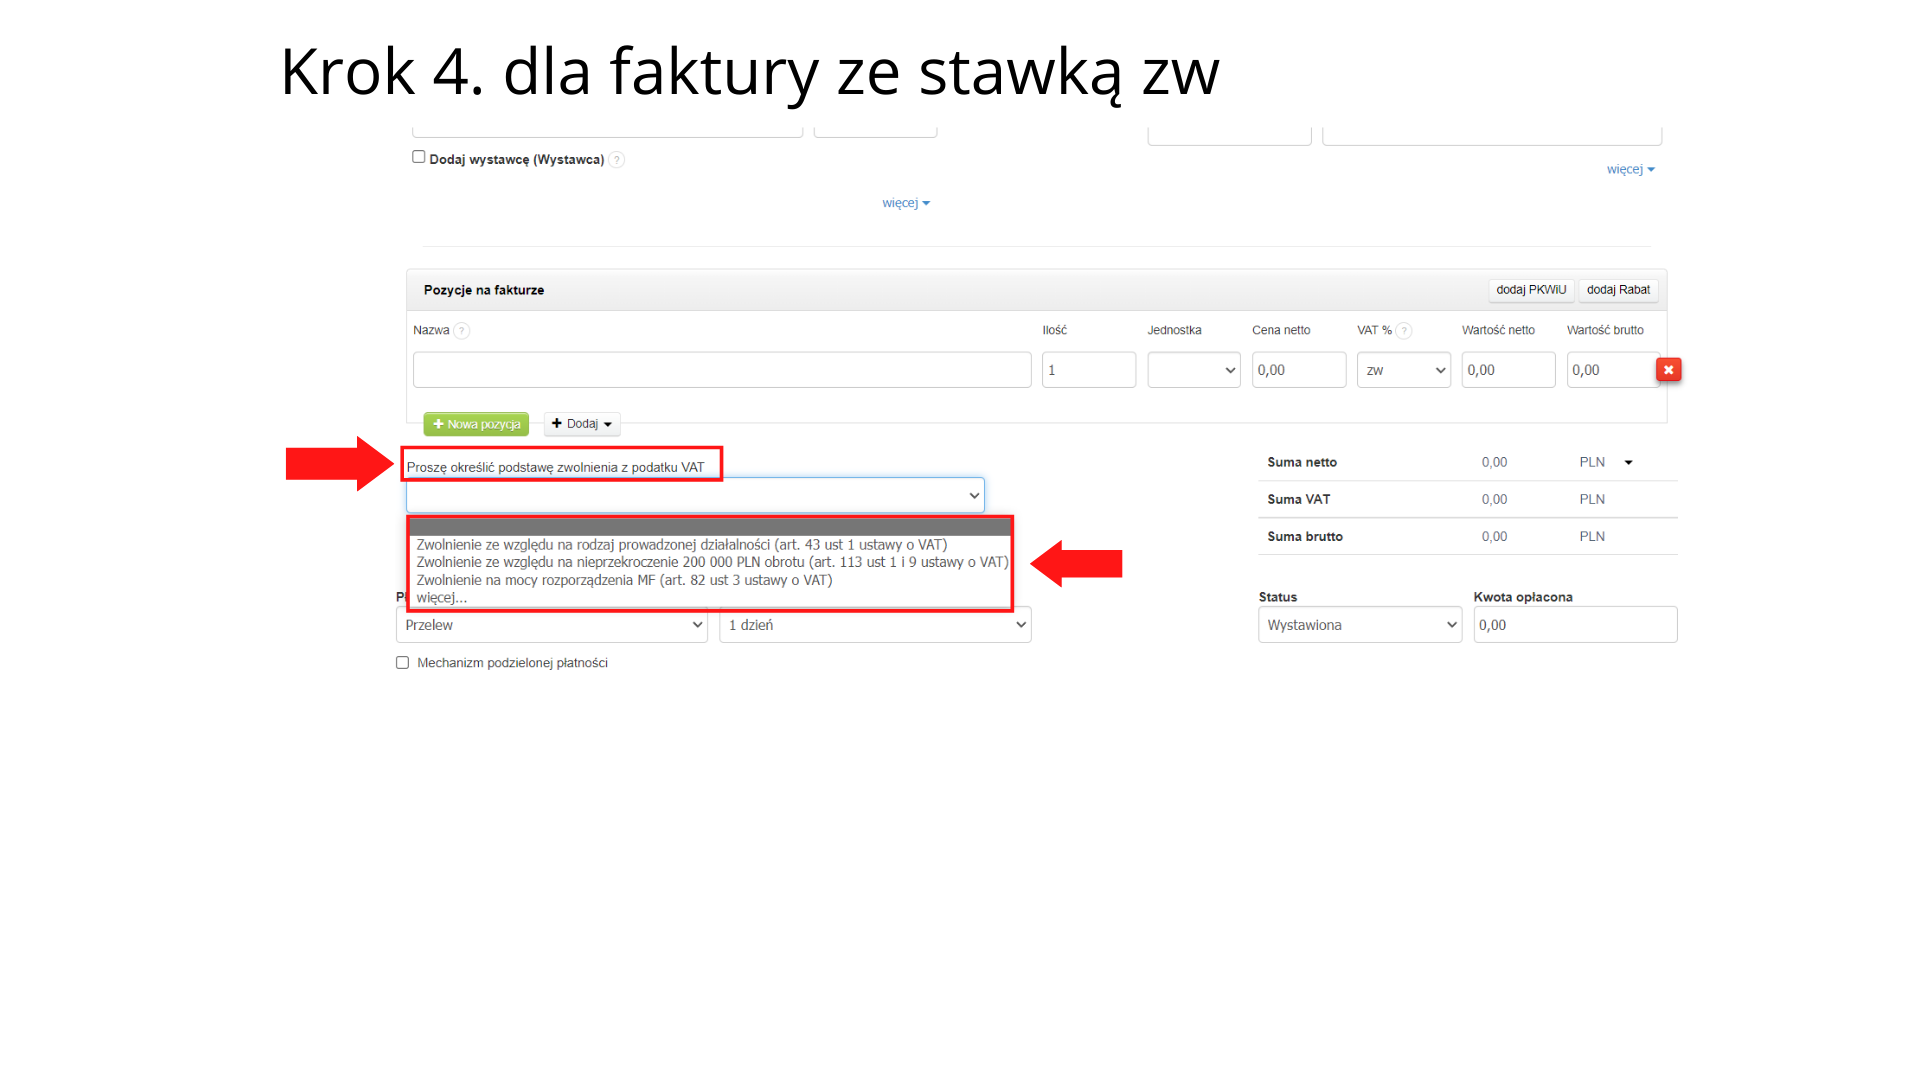 Jak w fakturownia.pl wystawić fakturę ze stawką ZW lub 0% krok 4